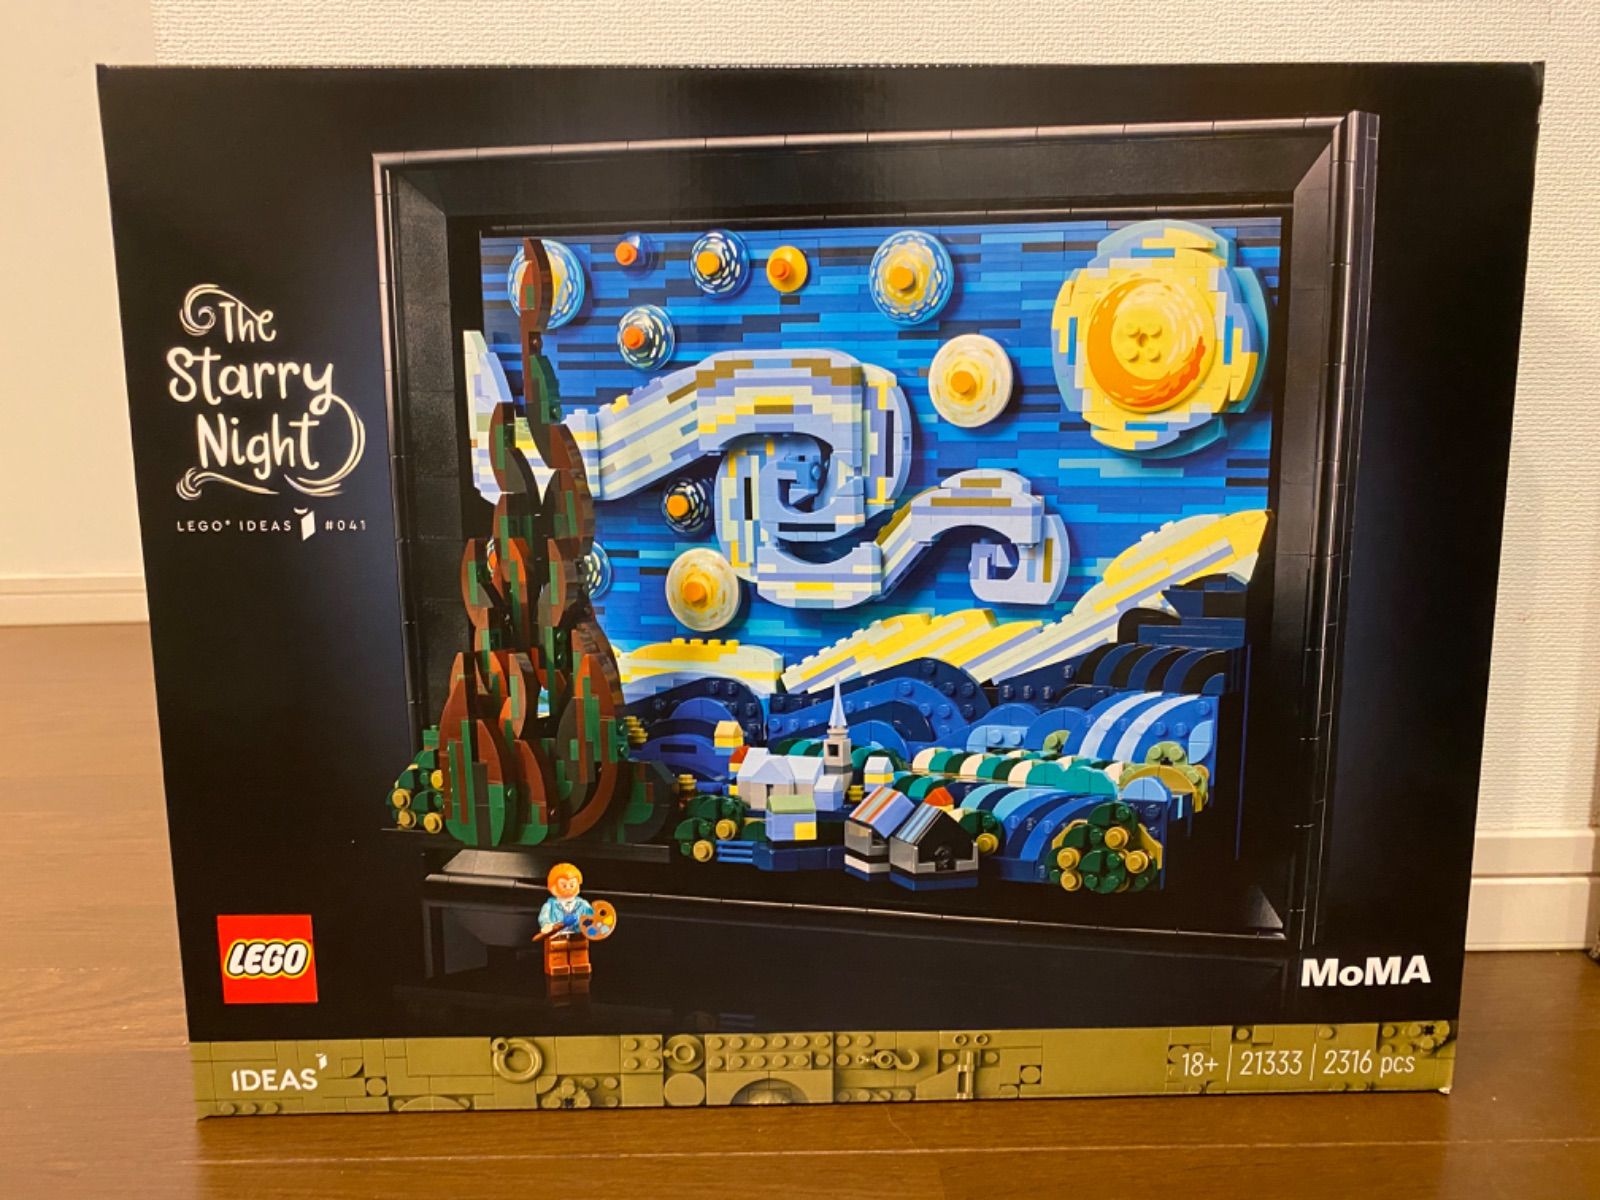 LEGO レゴ 21333 アイディア ゴッホ星月夜 正規品 新品未開封 - メルカリ